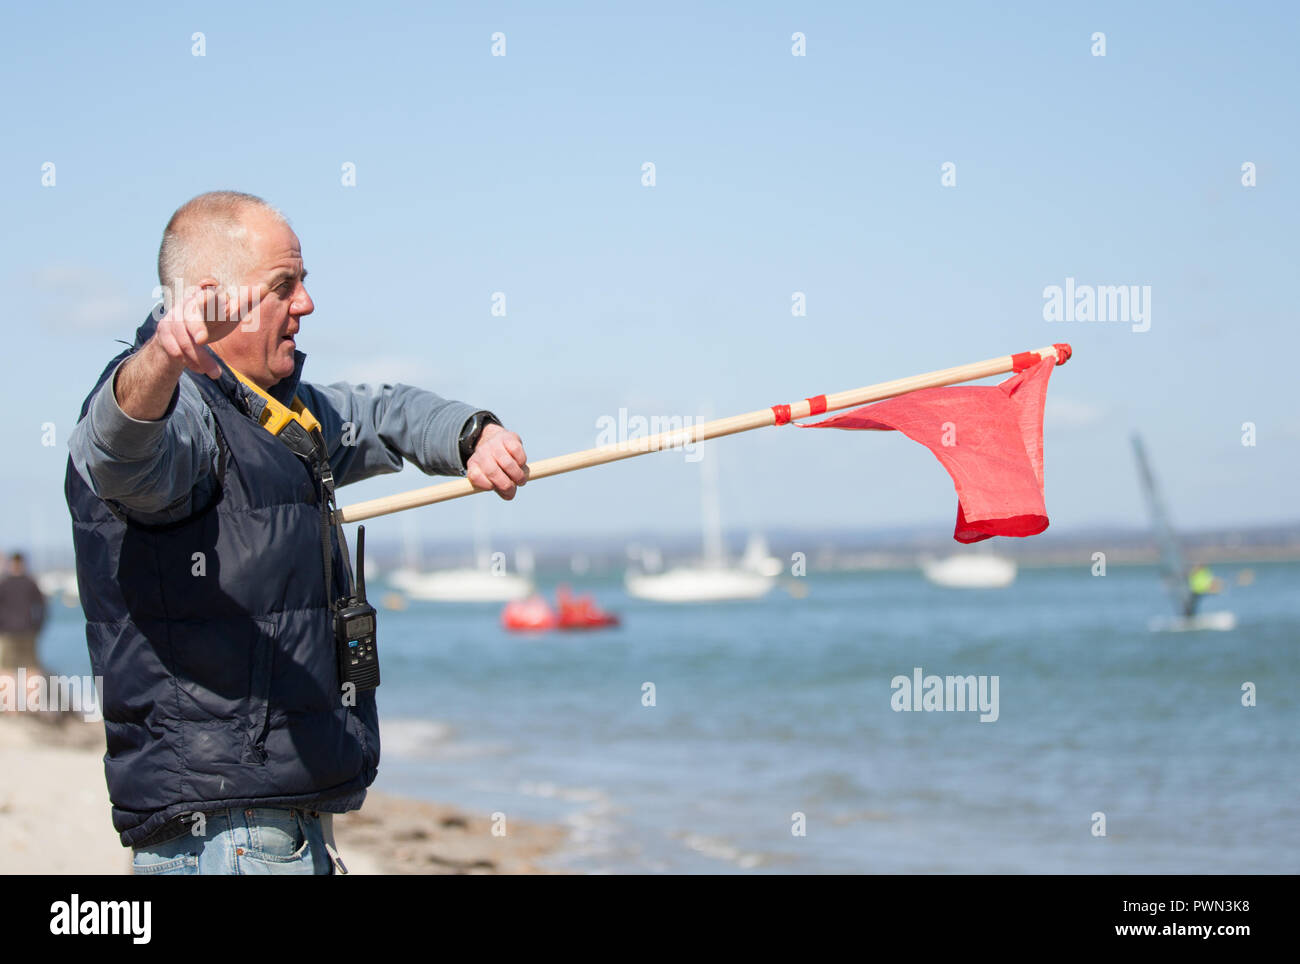 L'uomo sventolano fuori uno sport acquatico racer Foto Stock